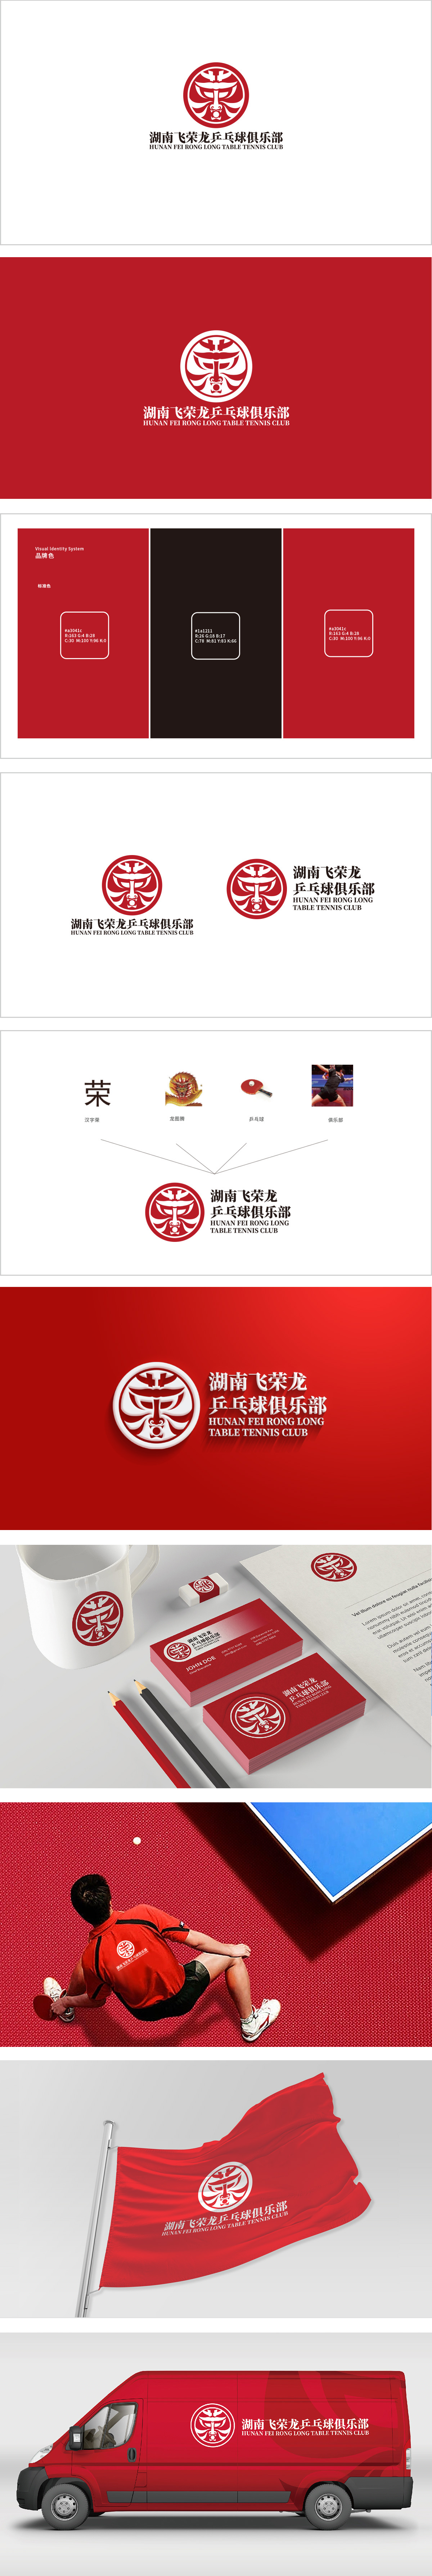 湖南飞荣龙乒乓球俱乐部休闲娱乐生活服务LOGO设计